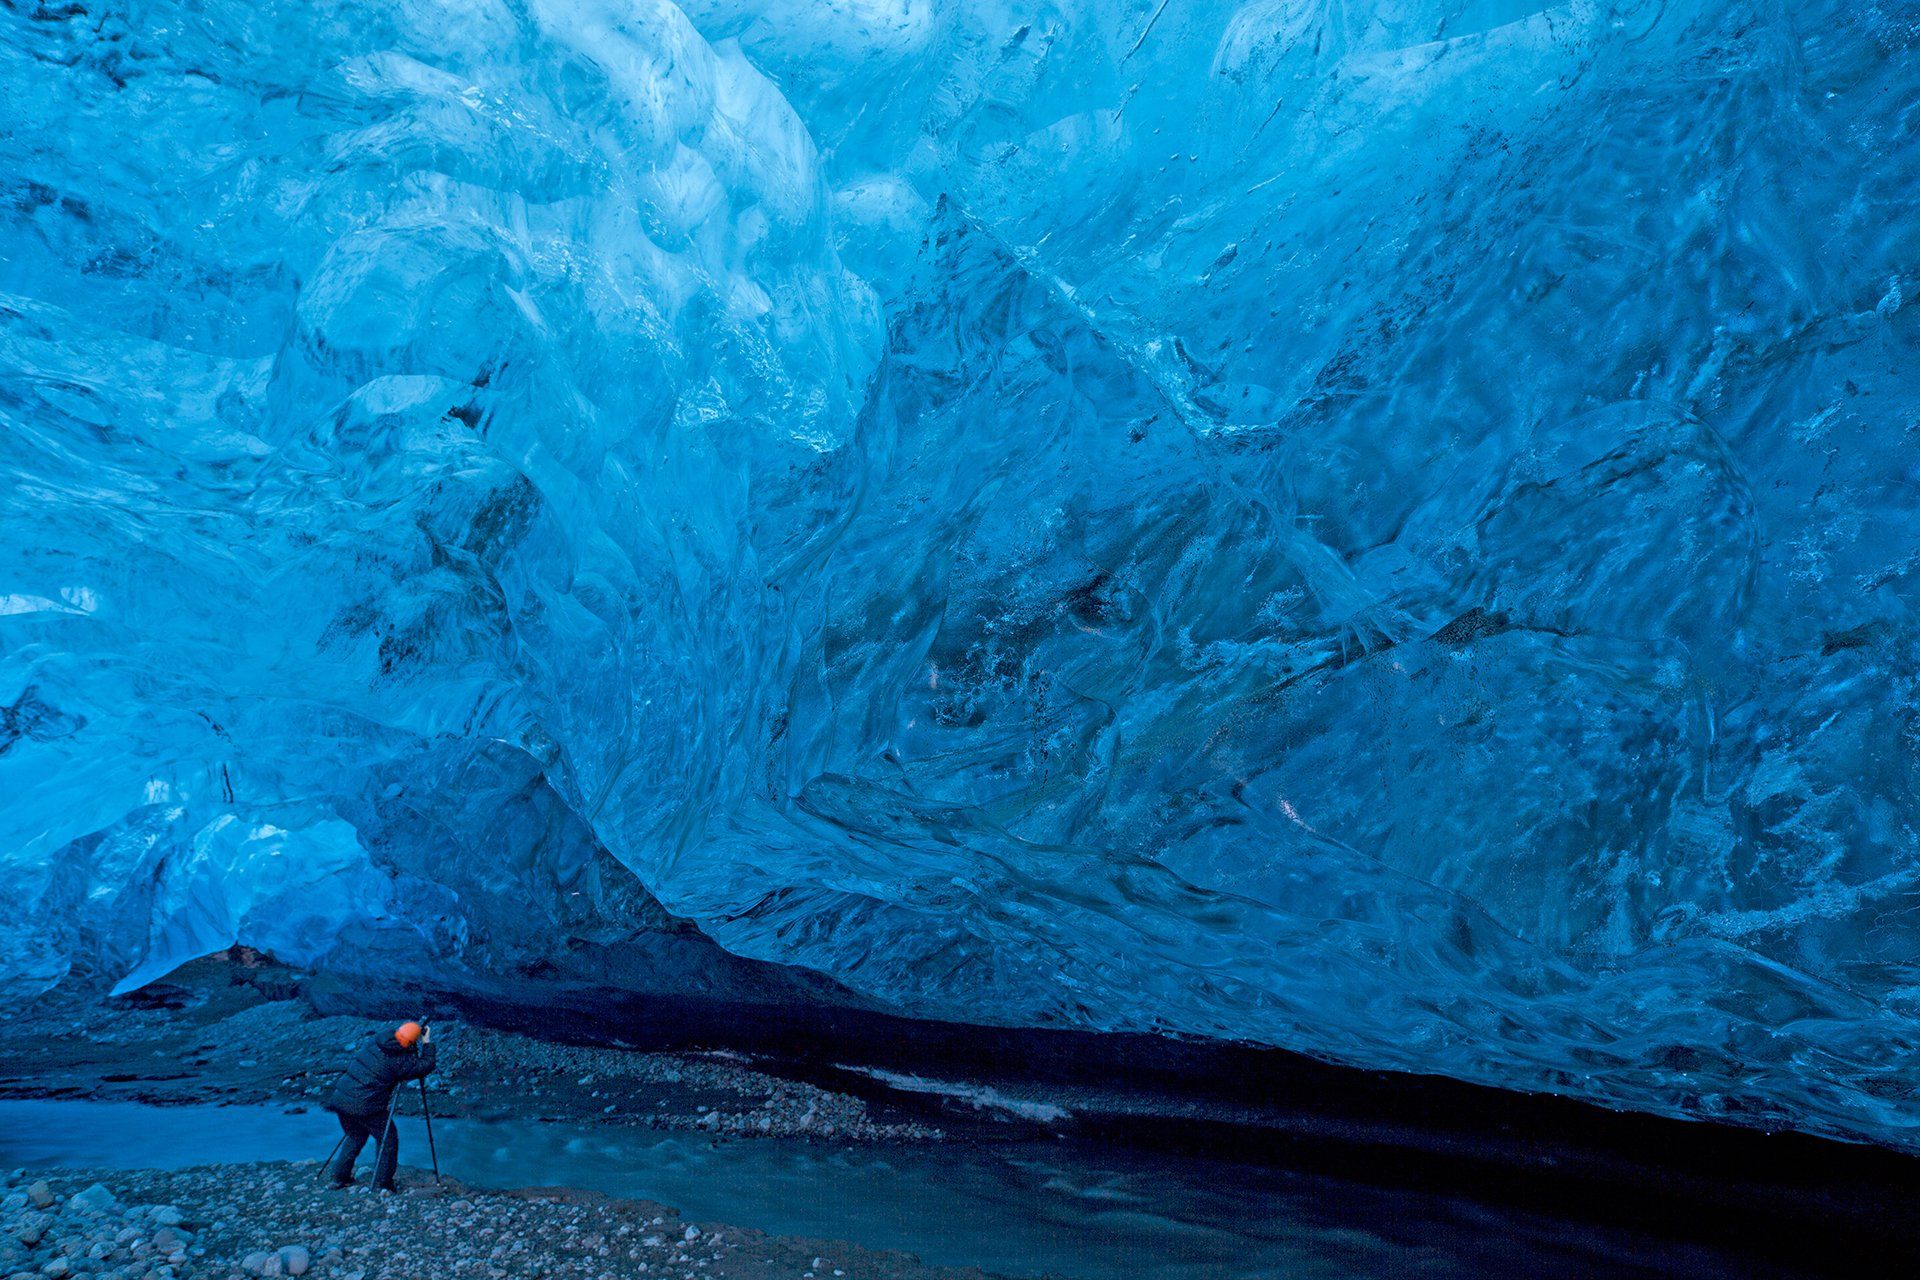 ледник,лёд,пещера,река,путешествие,приключение,синий,исландия,фотограф,travel,ice,iceland,blue,, Олег Грачёв